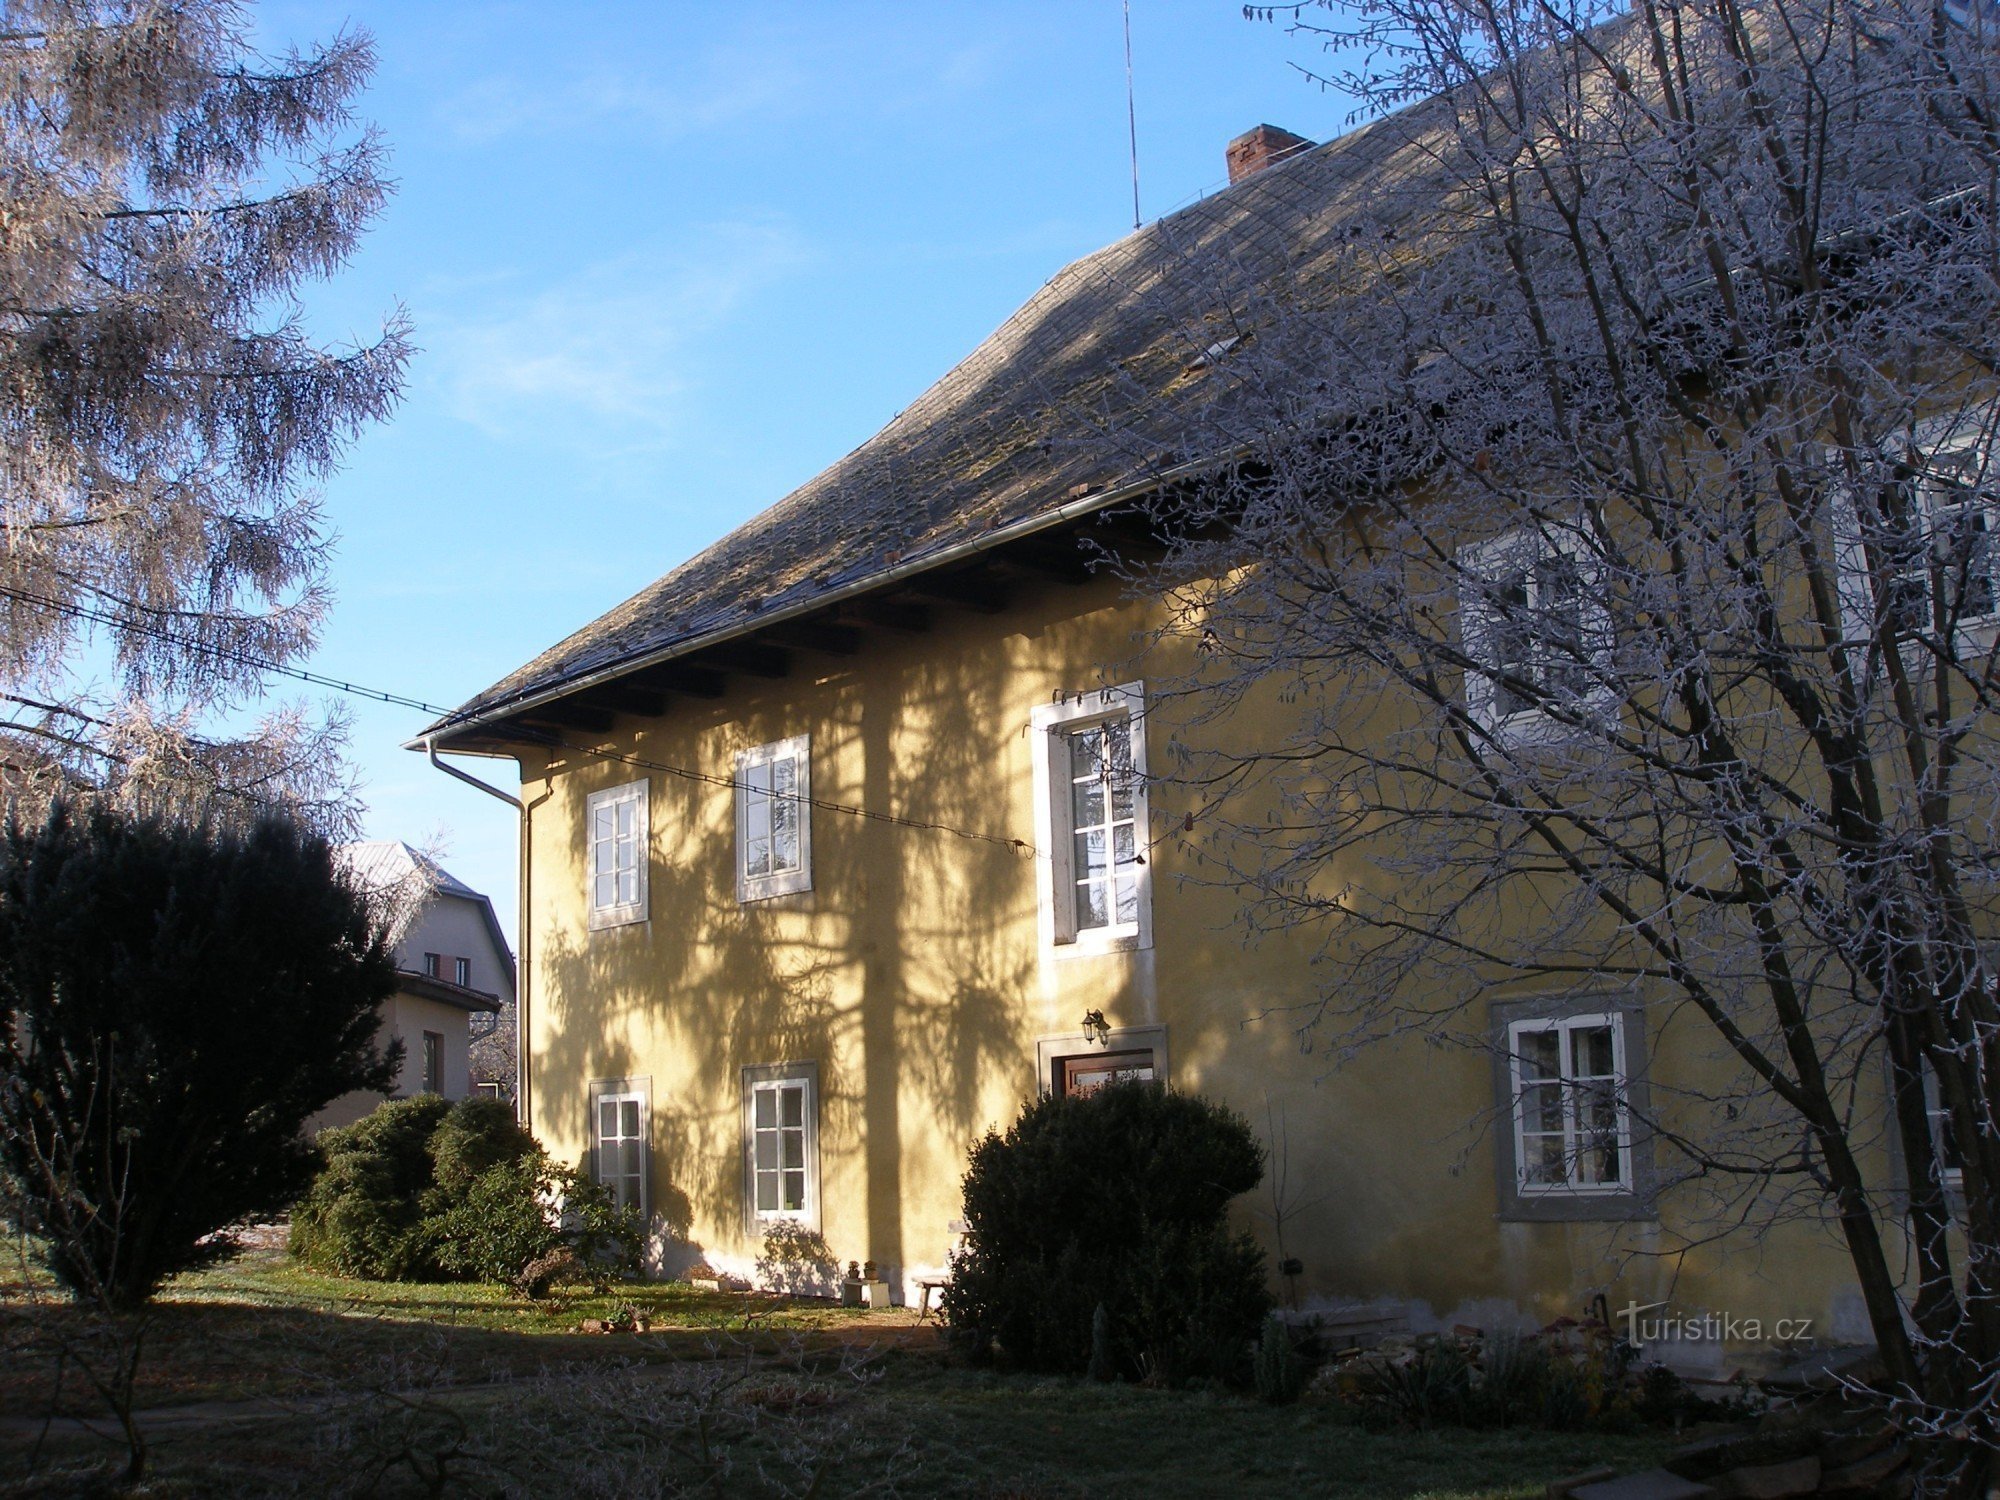 Бывший пасторский дом в селе Судслава, построенный в 1692 году.